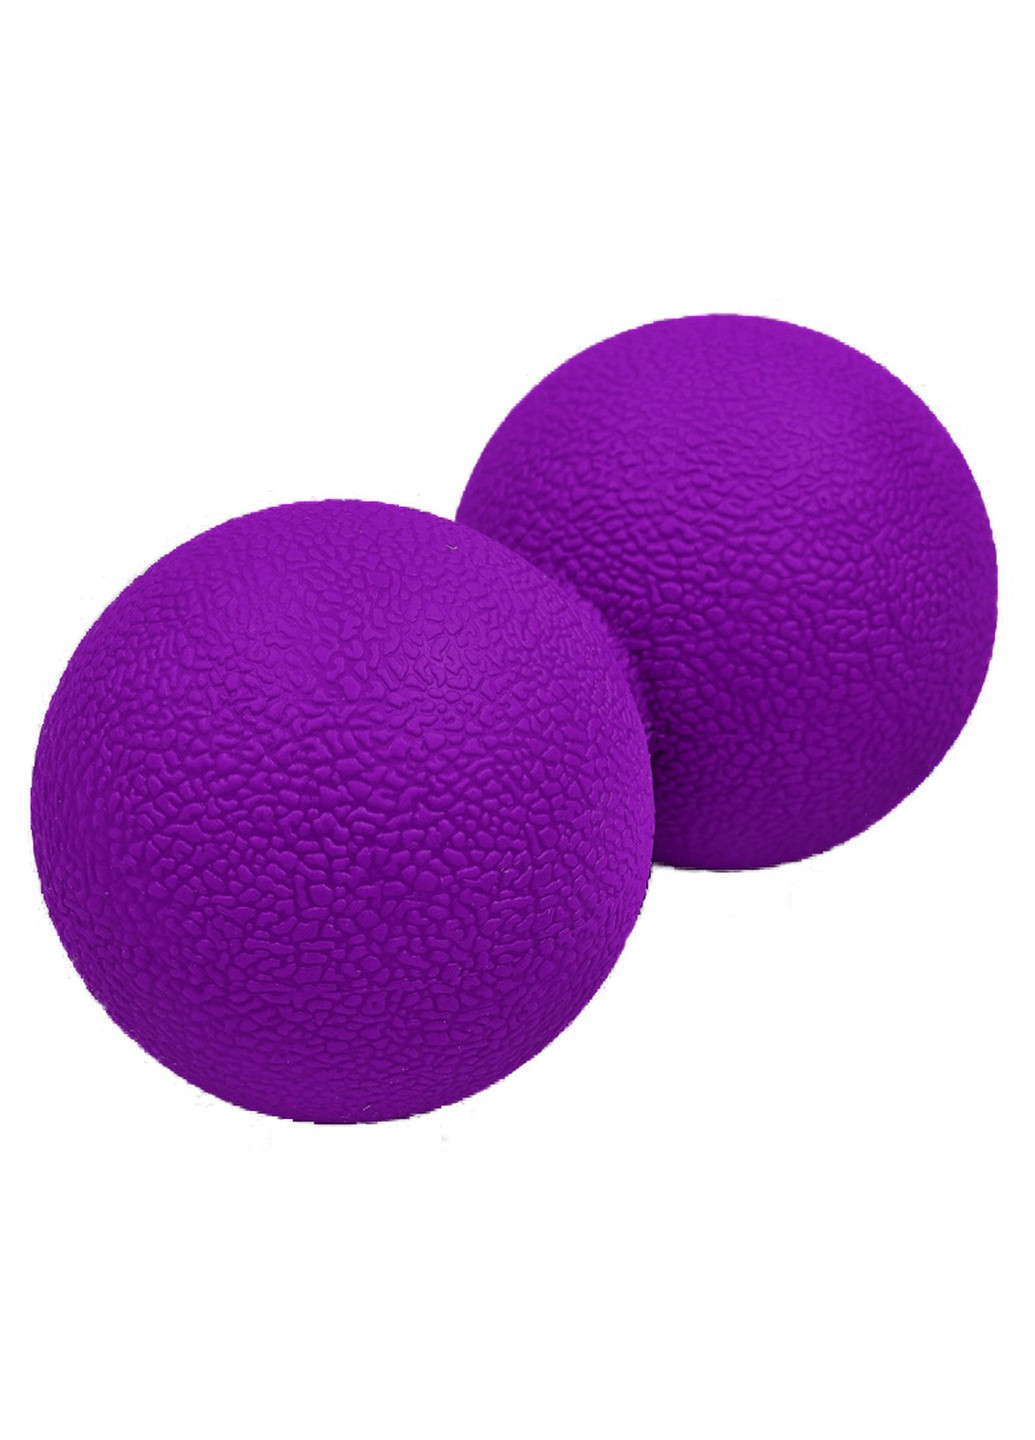 Массажный мячик TPR 6х12 см двойной фиолетовый (мяч для массажа спины, миофасциального релиза и самомассажа) EF-MD12-V EasyFit (243205442)